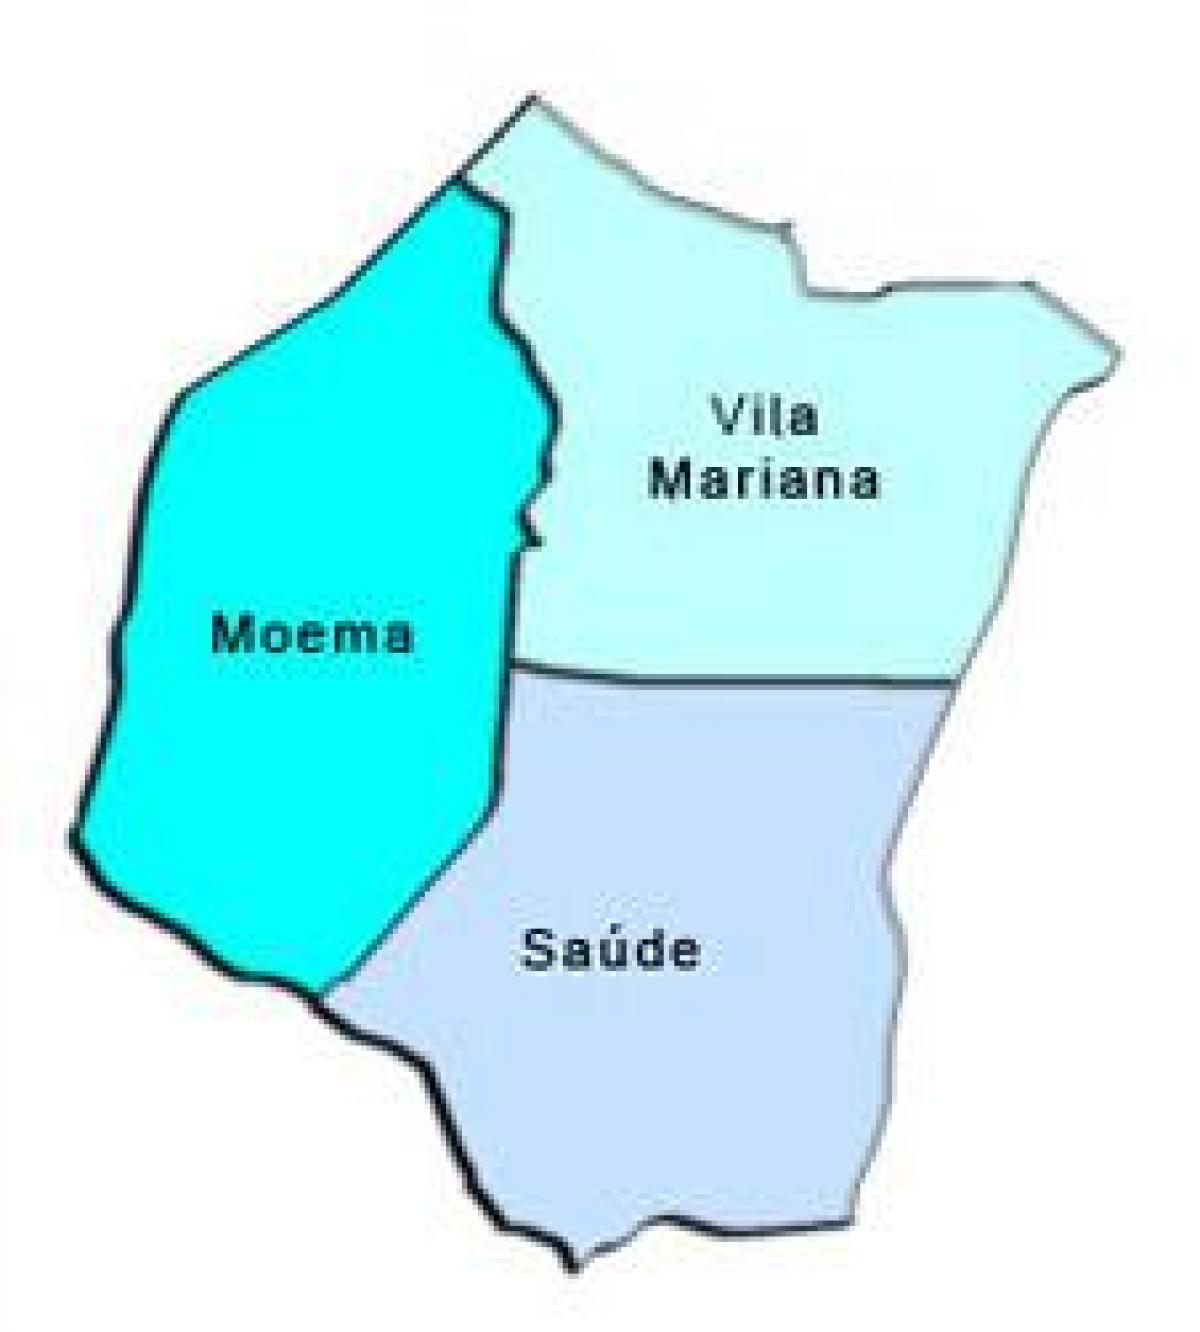 Harta Vila Mariana sub-prefectura